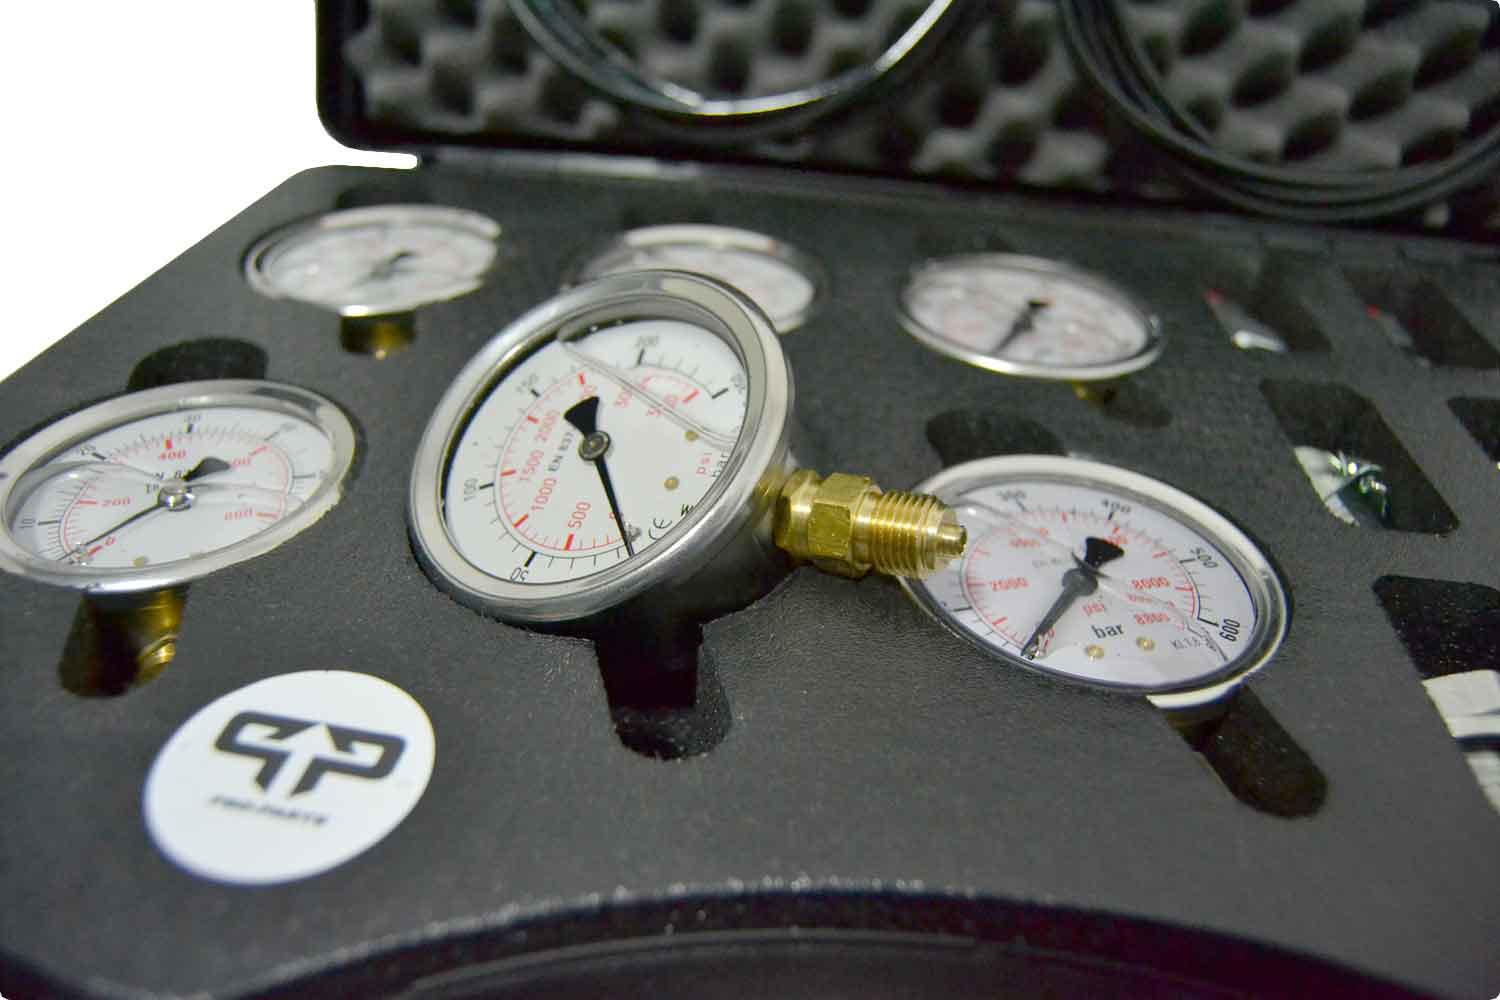 Glycerine pressure gauge